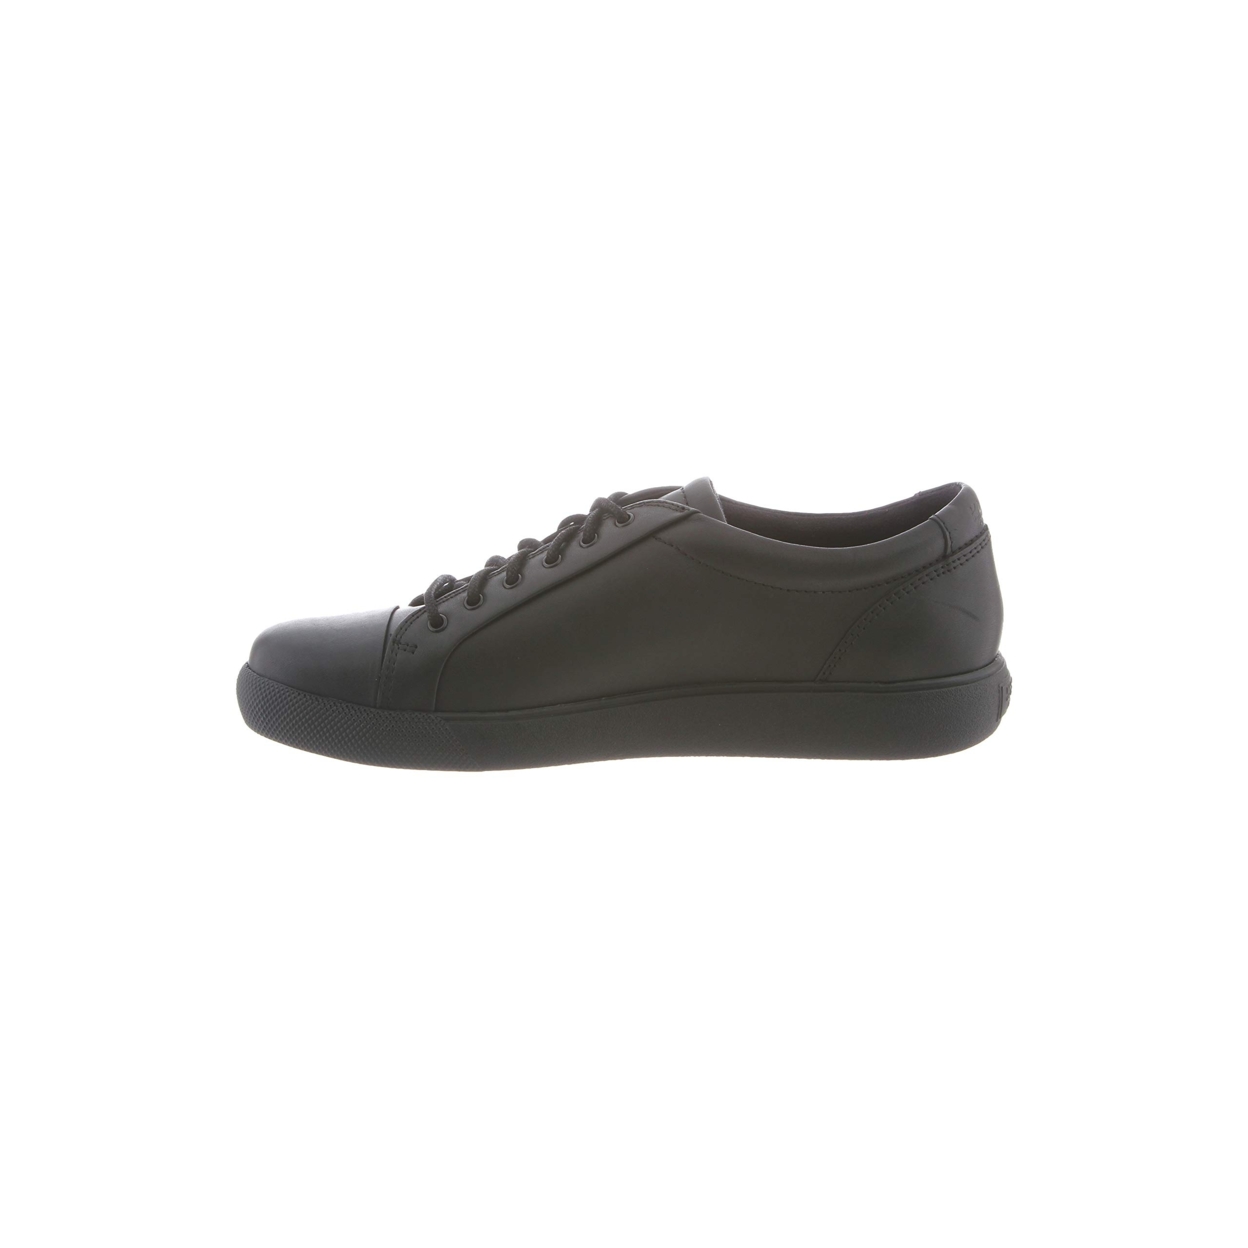 Klogs Footwear Women's Galley Shoe BLACK FULL GRAIN - BLACK FULL GRAIN, 9-M